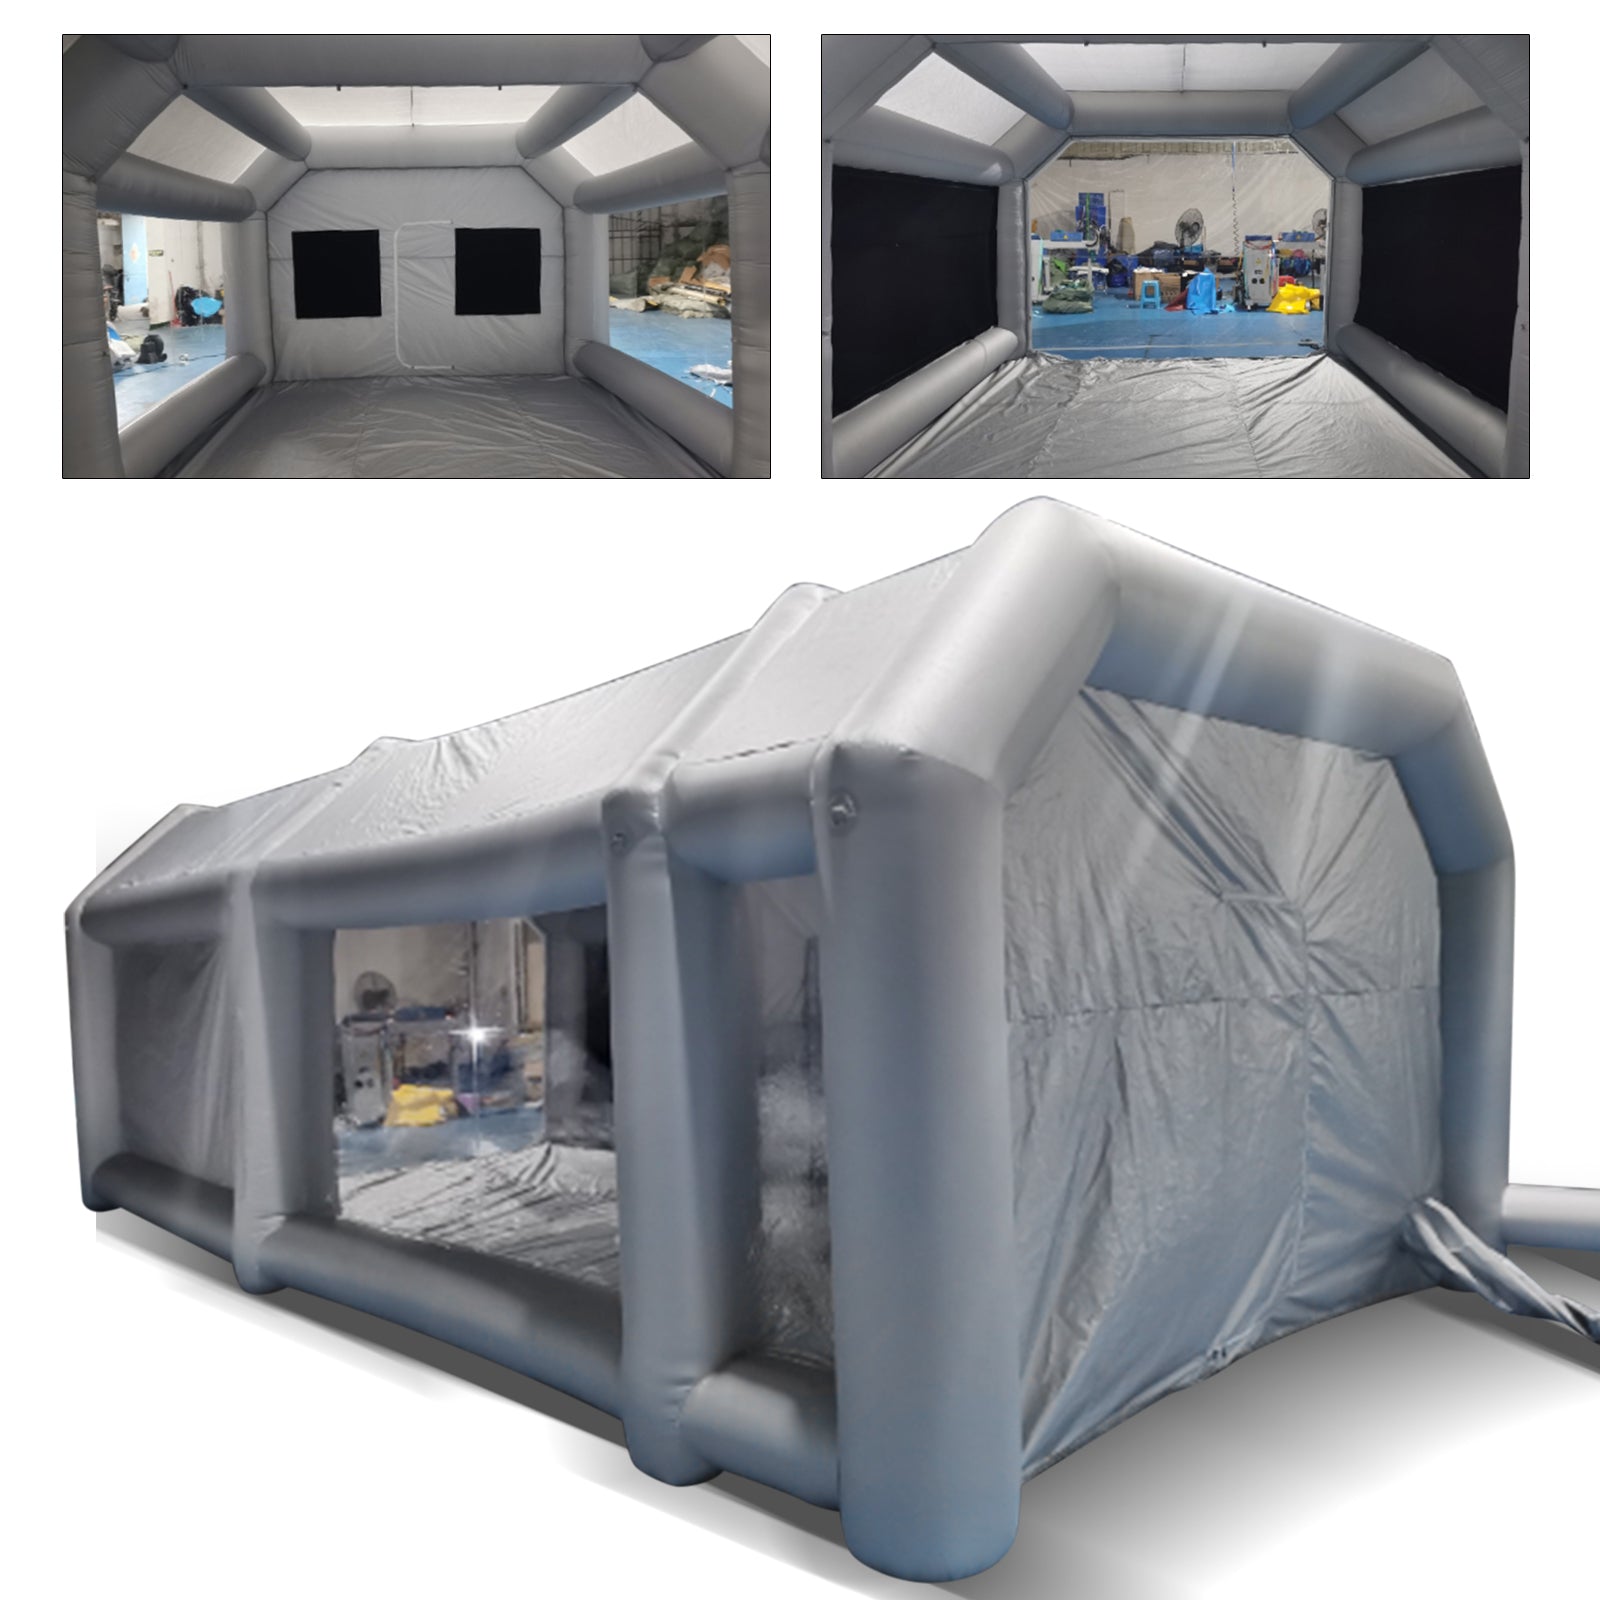 8 x 4 x 3 m, tenda gonfiabile,tenda verniciata gonfiabile per auto garage tenda di lavoro attività esposizioni e campeggio,tessuto PVC+Oxford